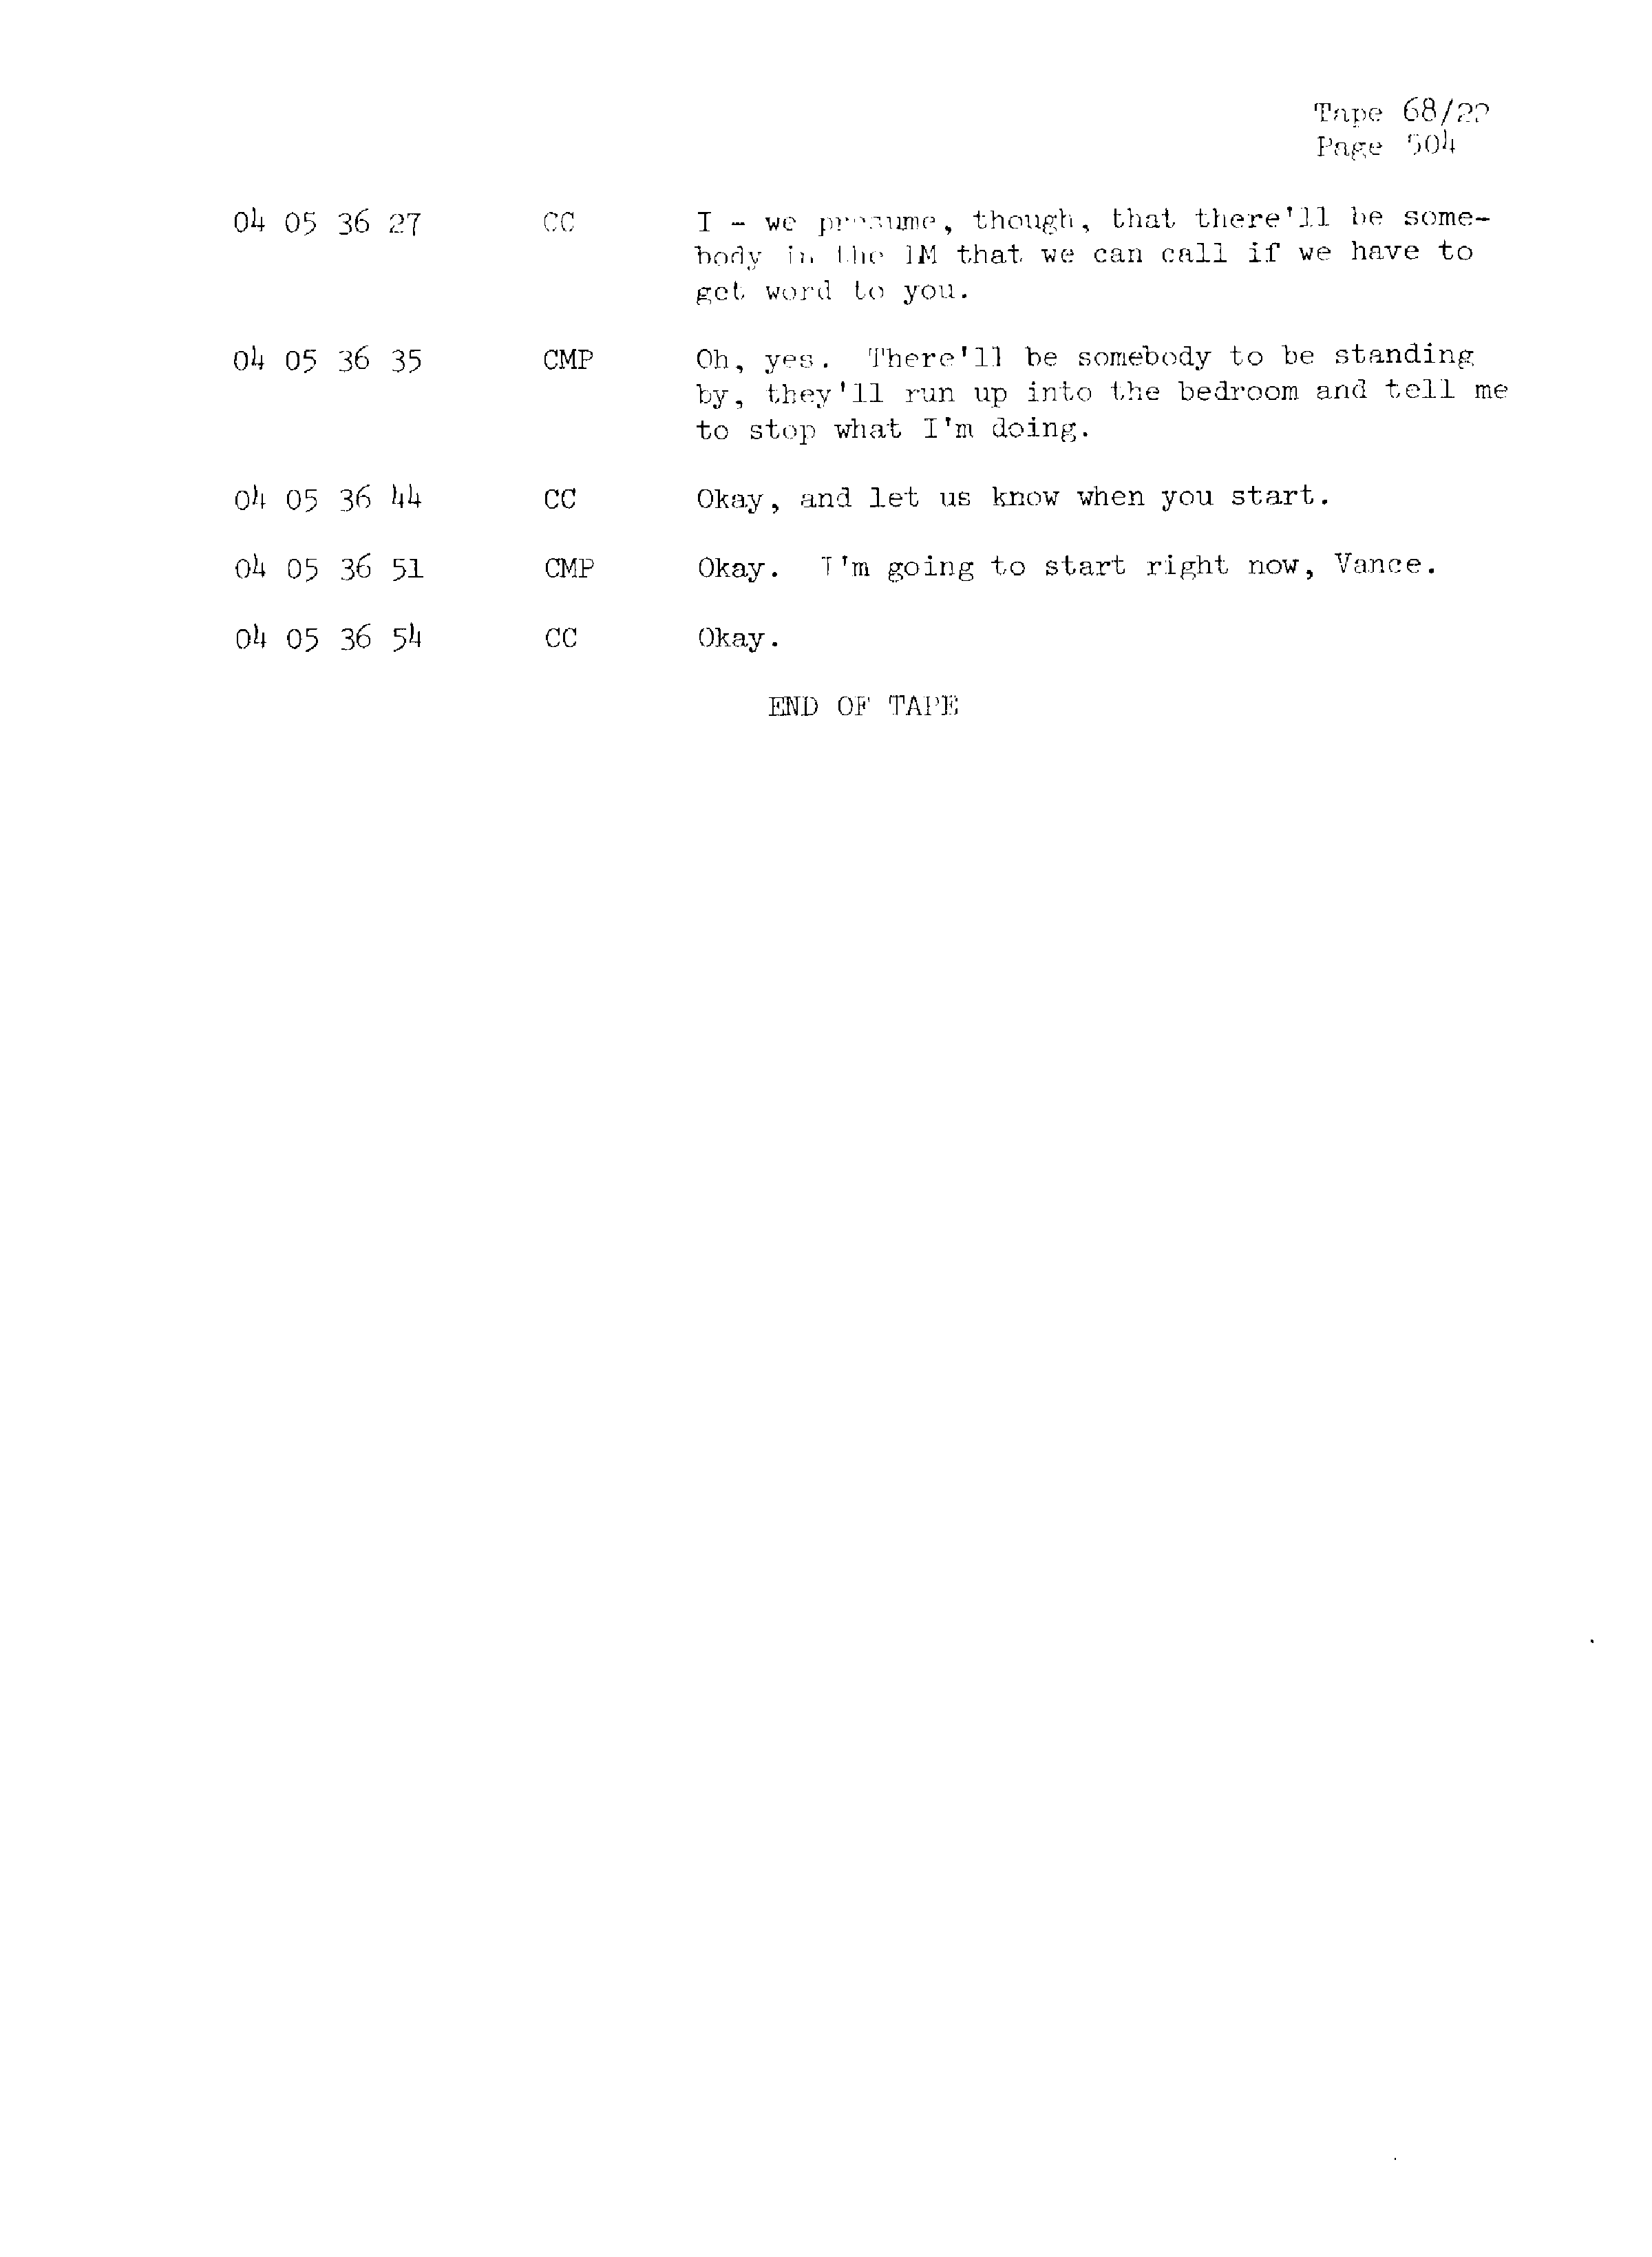 Page 511 of Apollo 13’s original transcript